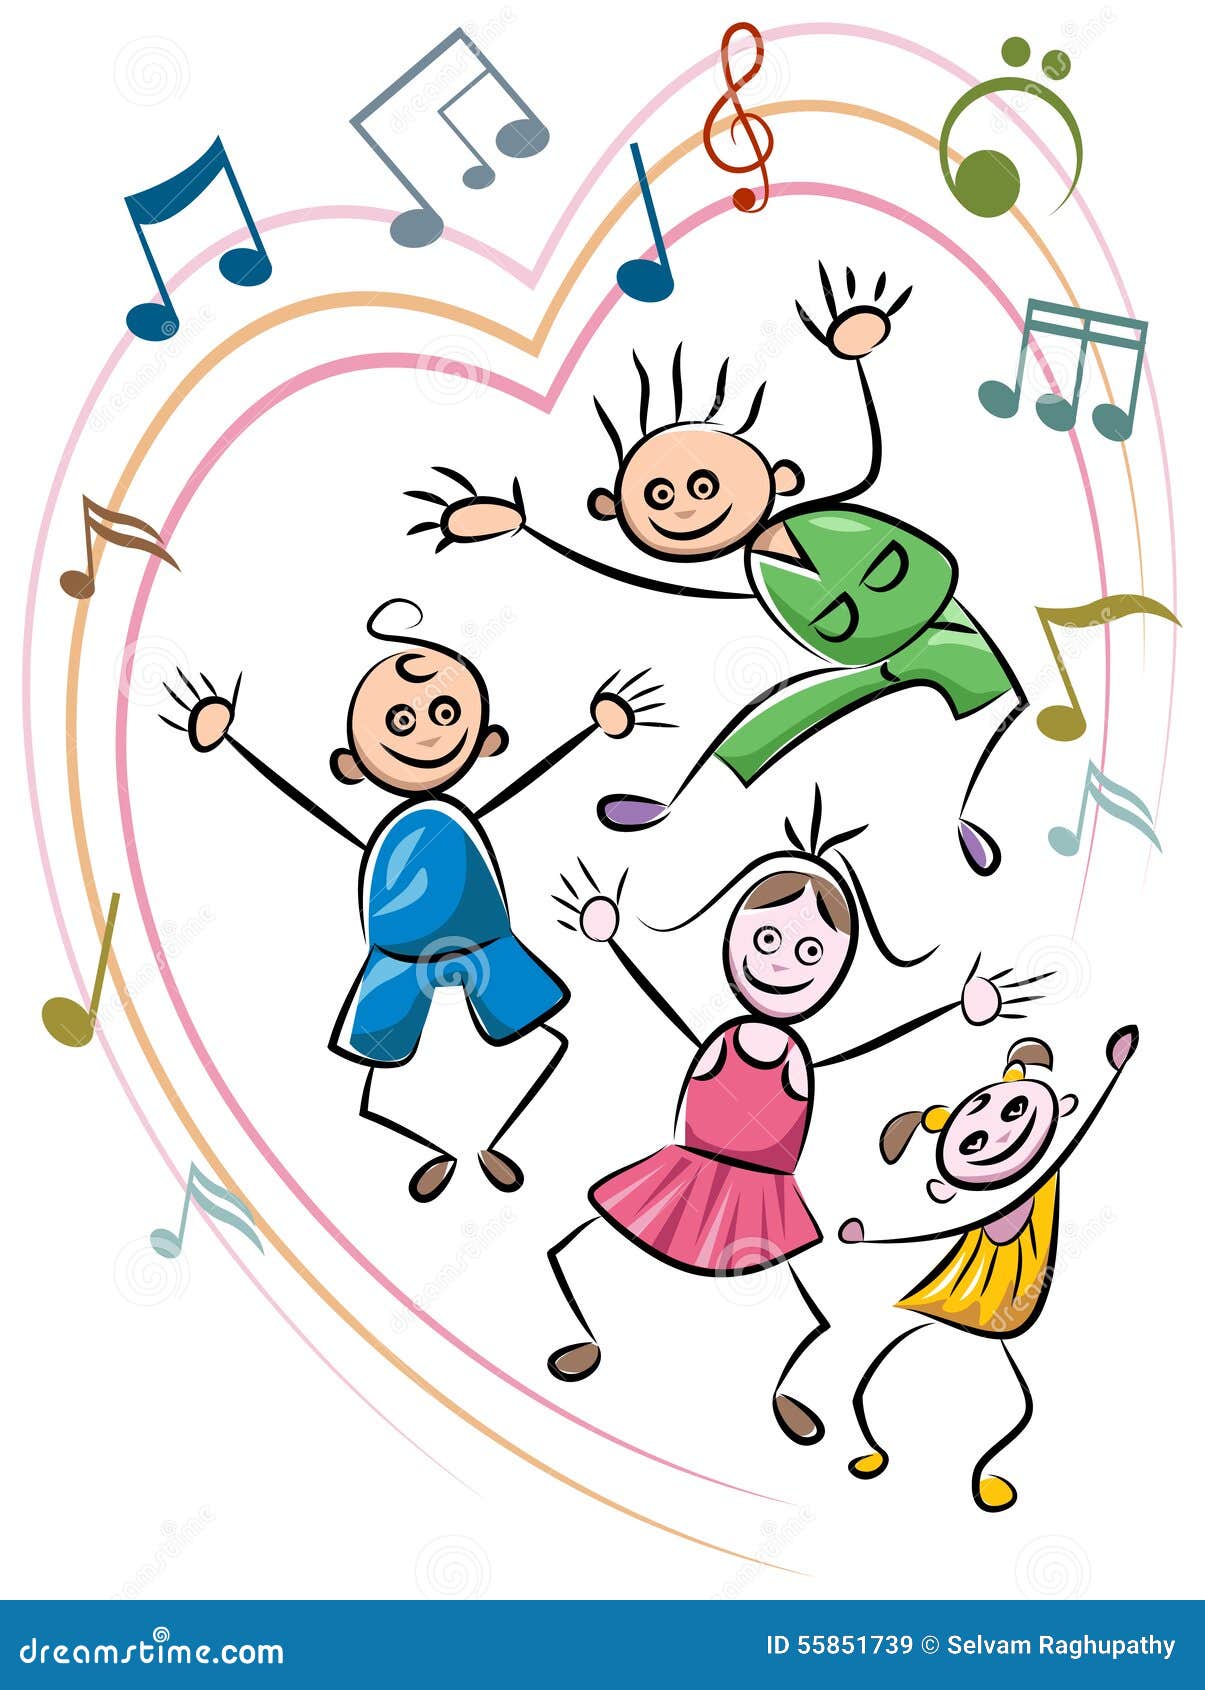 Kid dance stock vector. Illustration of infants, heart - 55851739